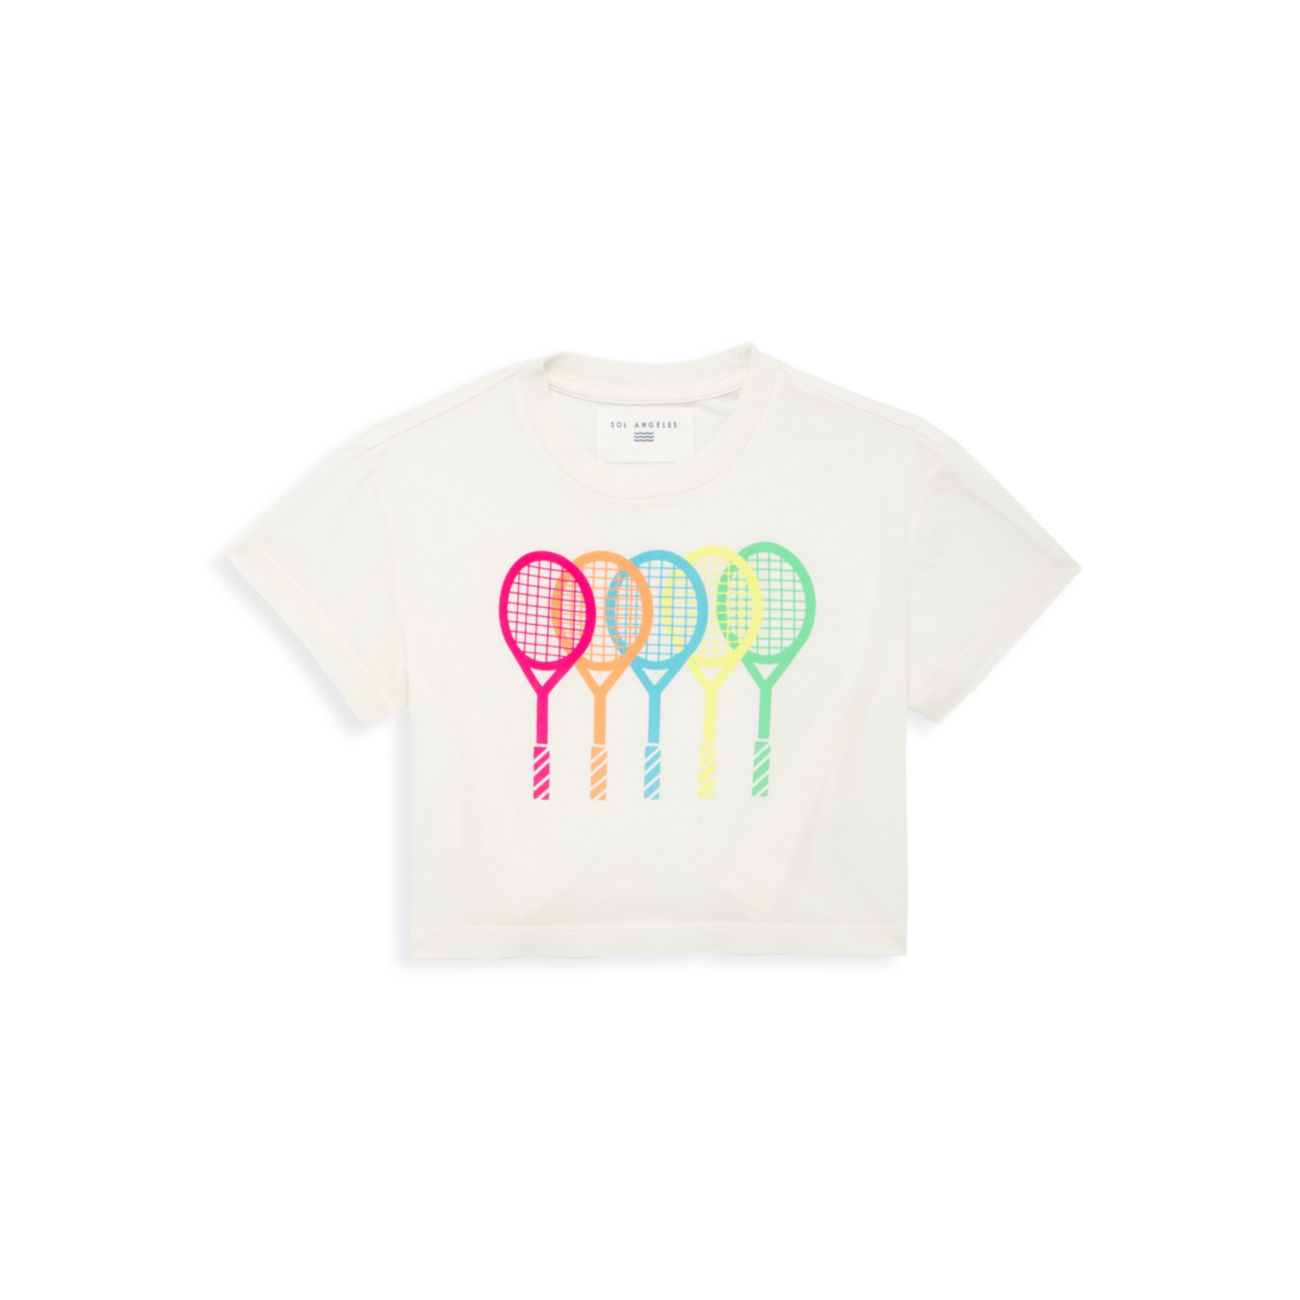 Хлопковая футболка для маленьких девочек и девочек Sol Angeles